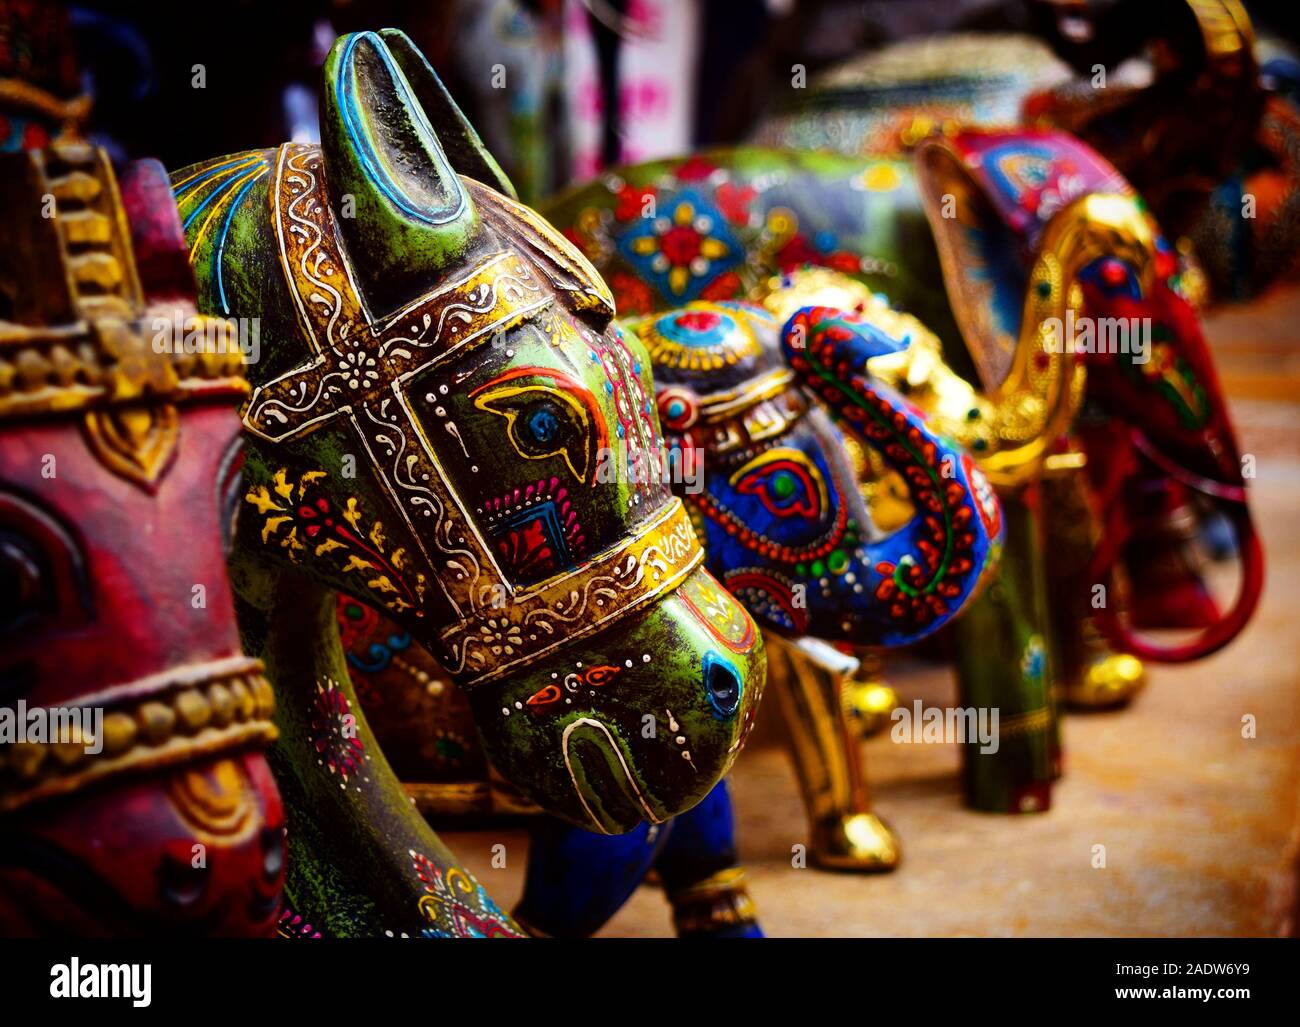 Farbenfrohen Kunsthandwerks Spielzeug Tiere Souvenirs aus Indien Markt Stockfoto